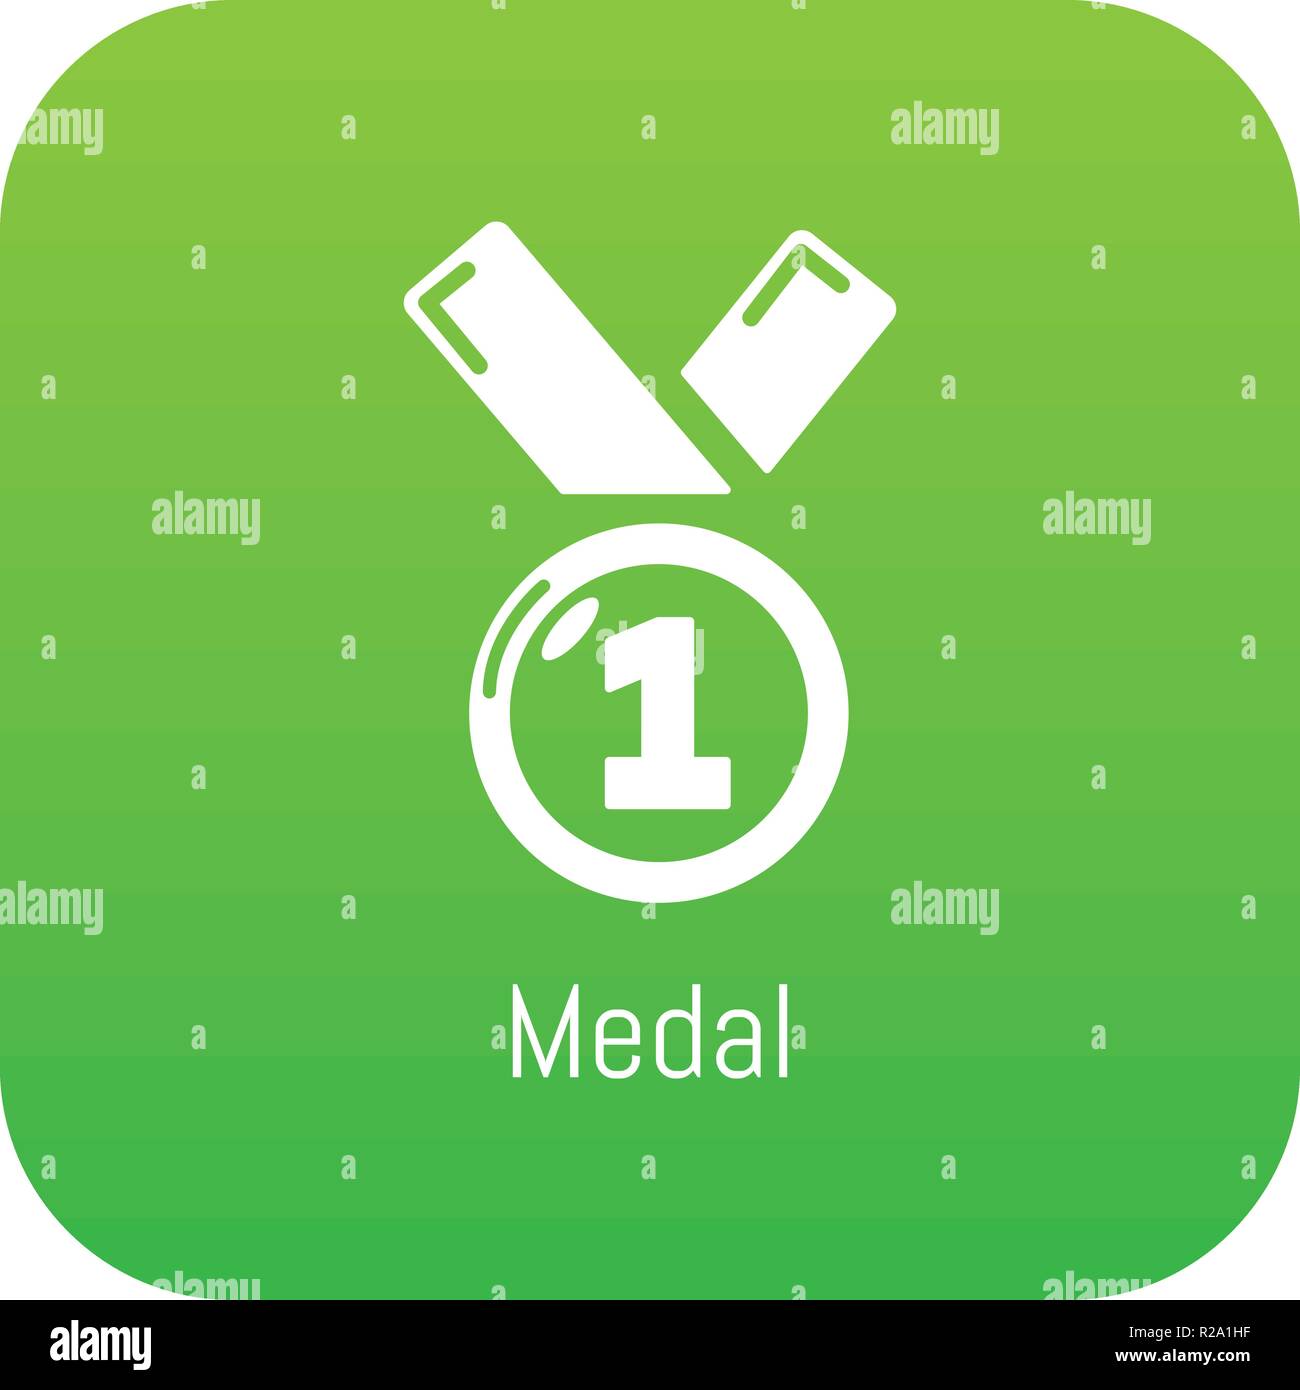 Medal icon green vector Stock Vector